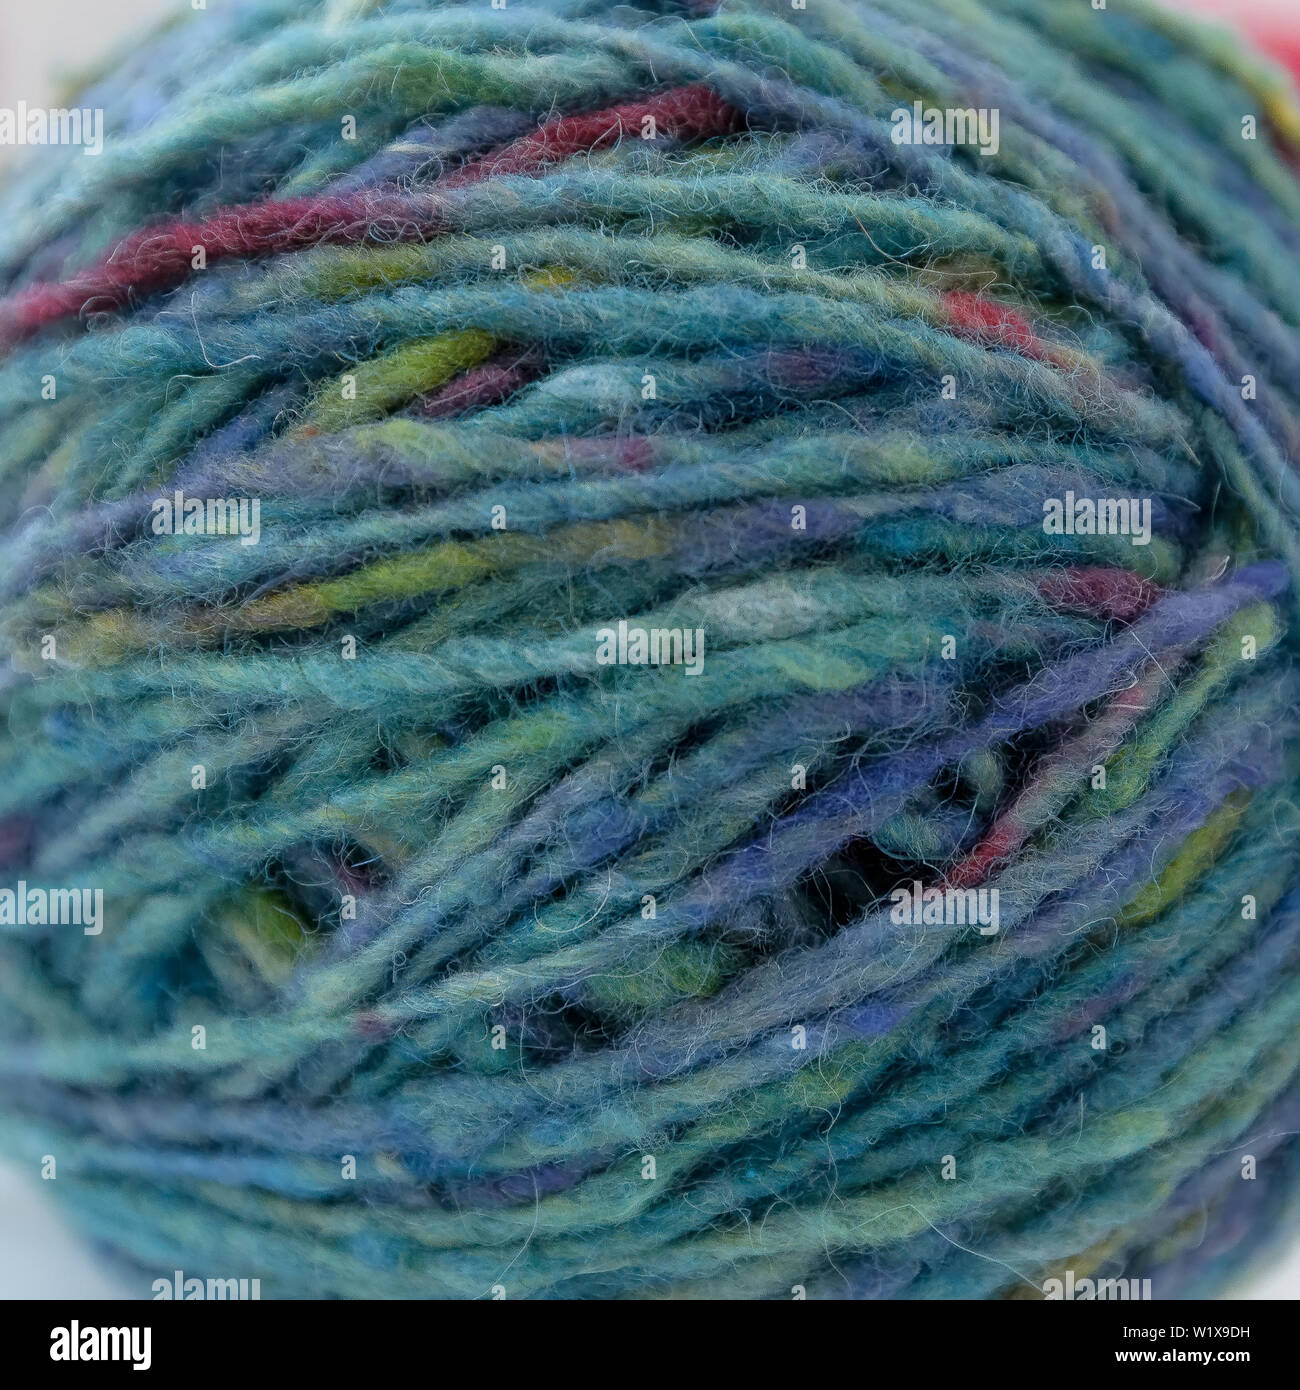 macro of multicolored wool yarn in ball Stock Photo